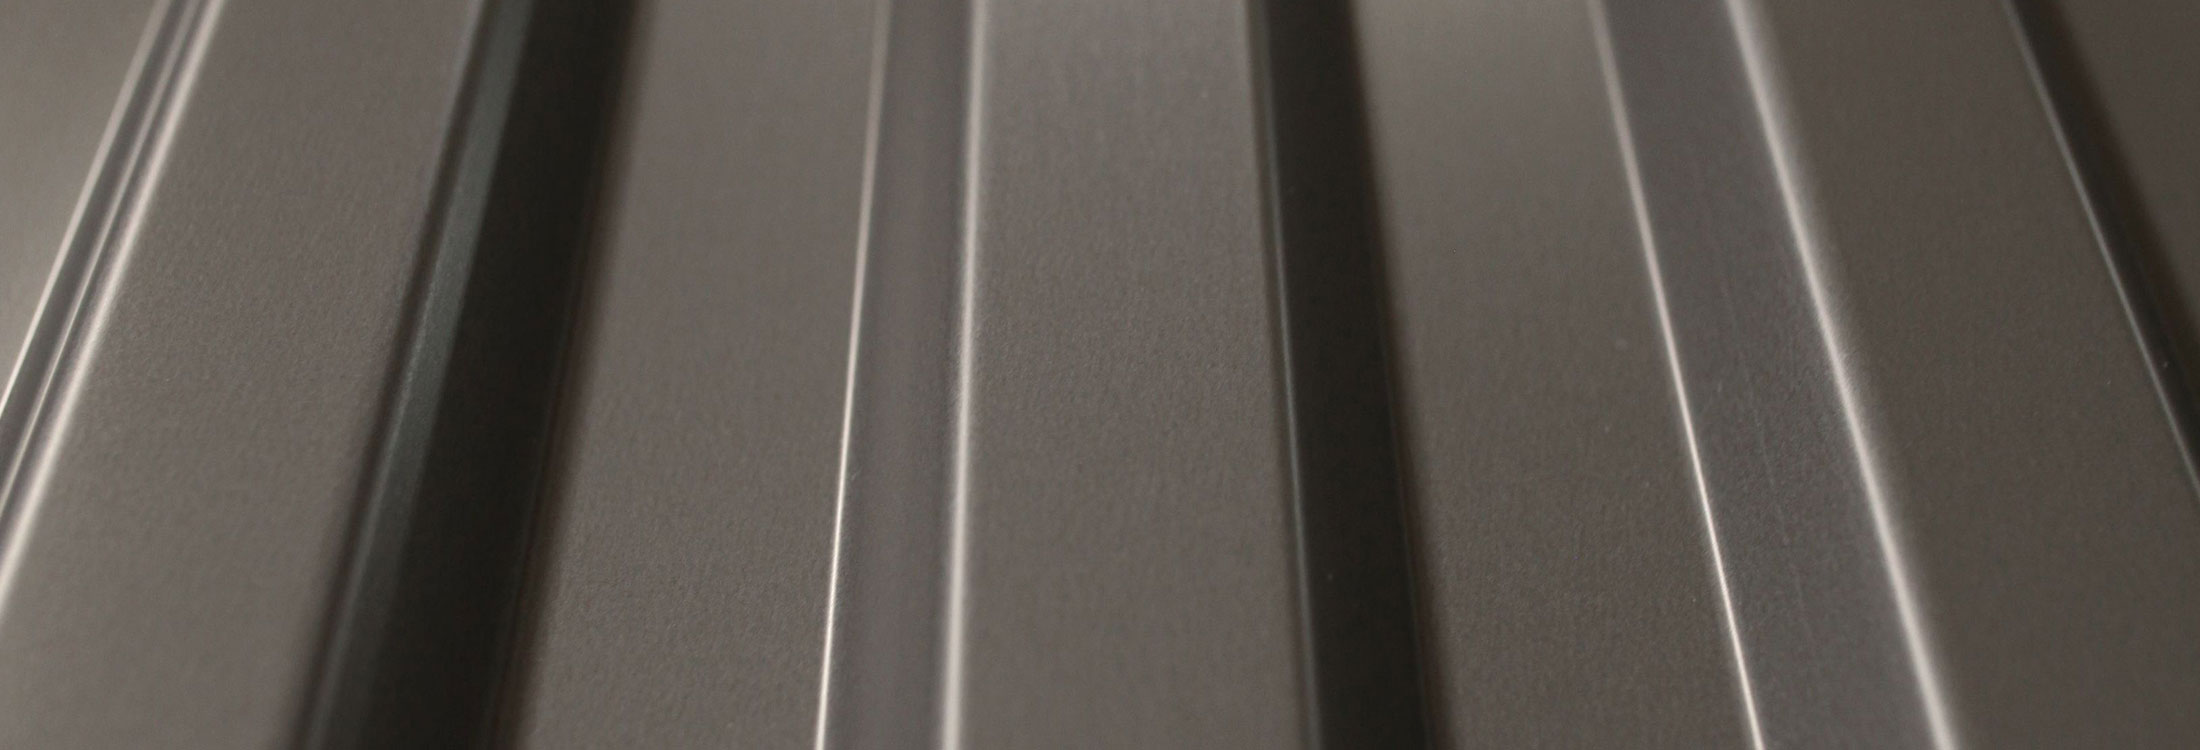 Korrugal® Aluminium-Profiltafeln für Dach, Wand und Fassade